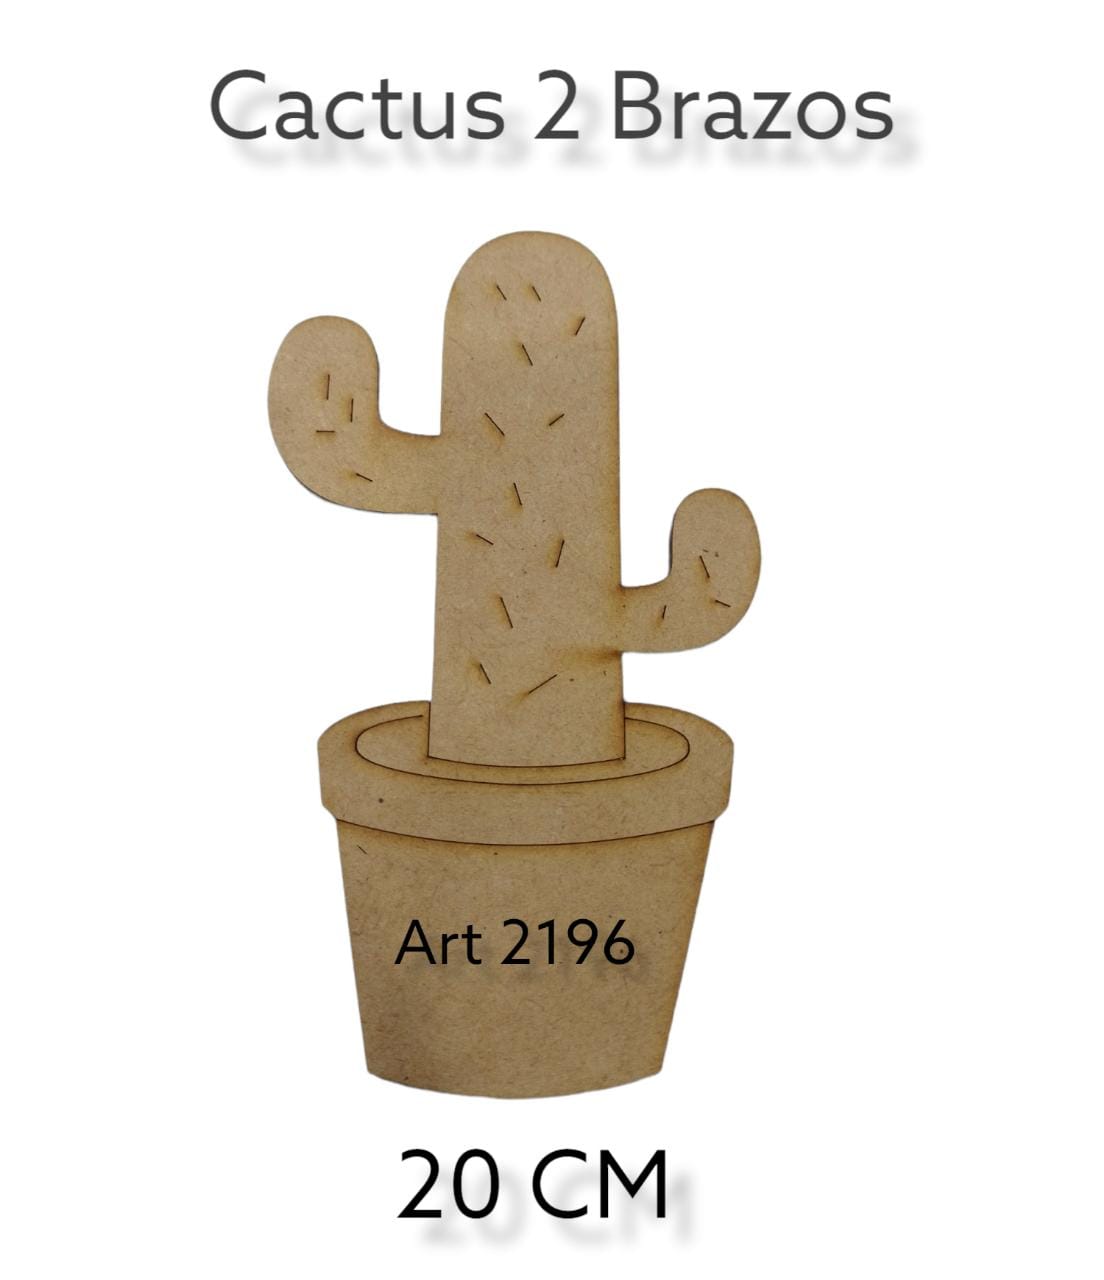 Figura cactus 2 brazos x 20 cm 